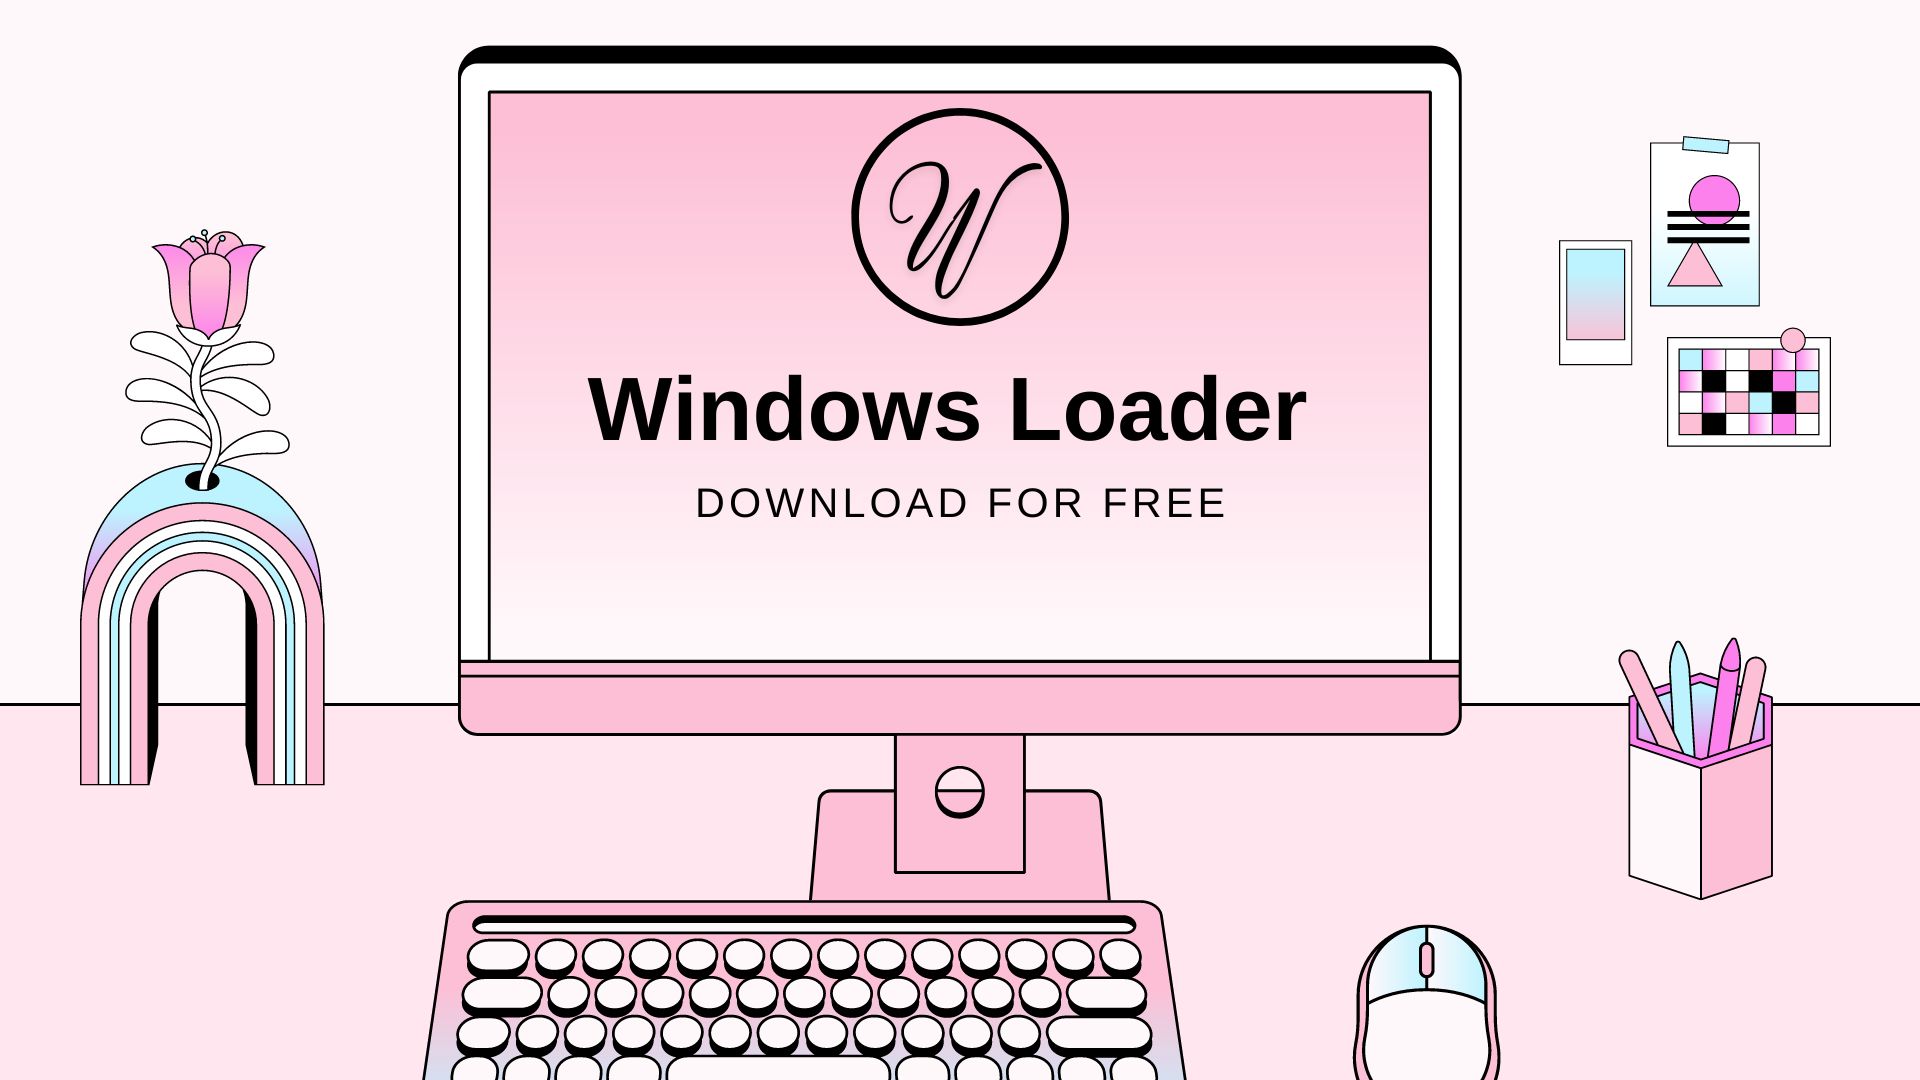 Windows Loader Download for Free